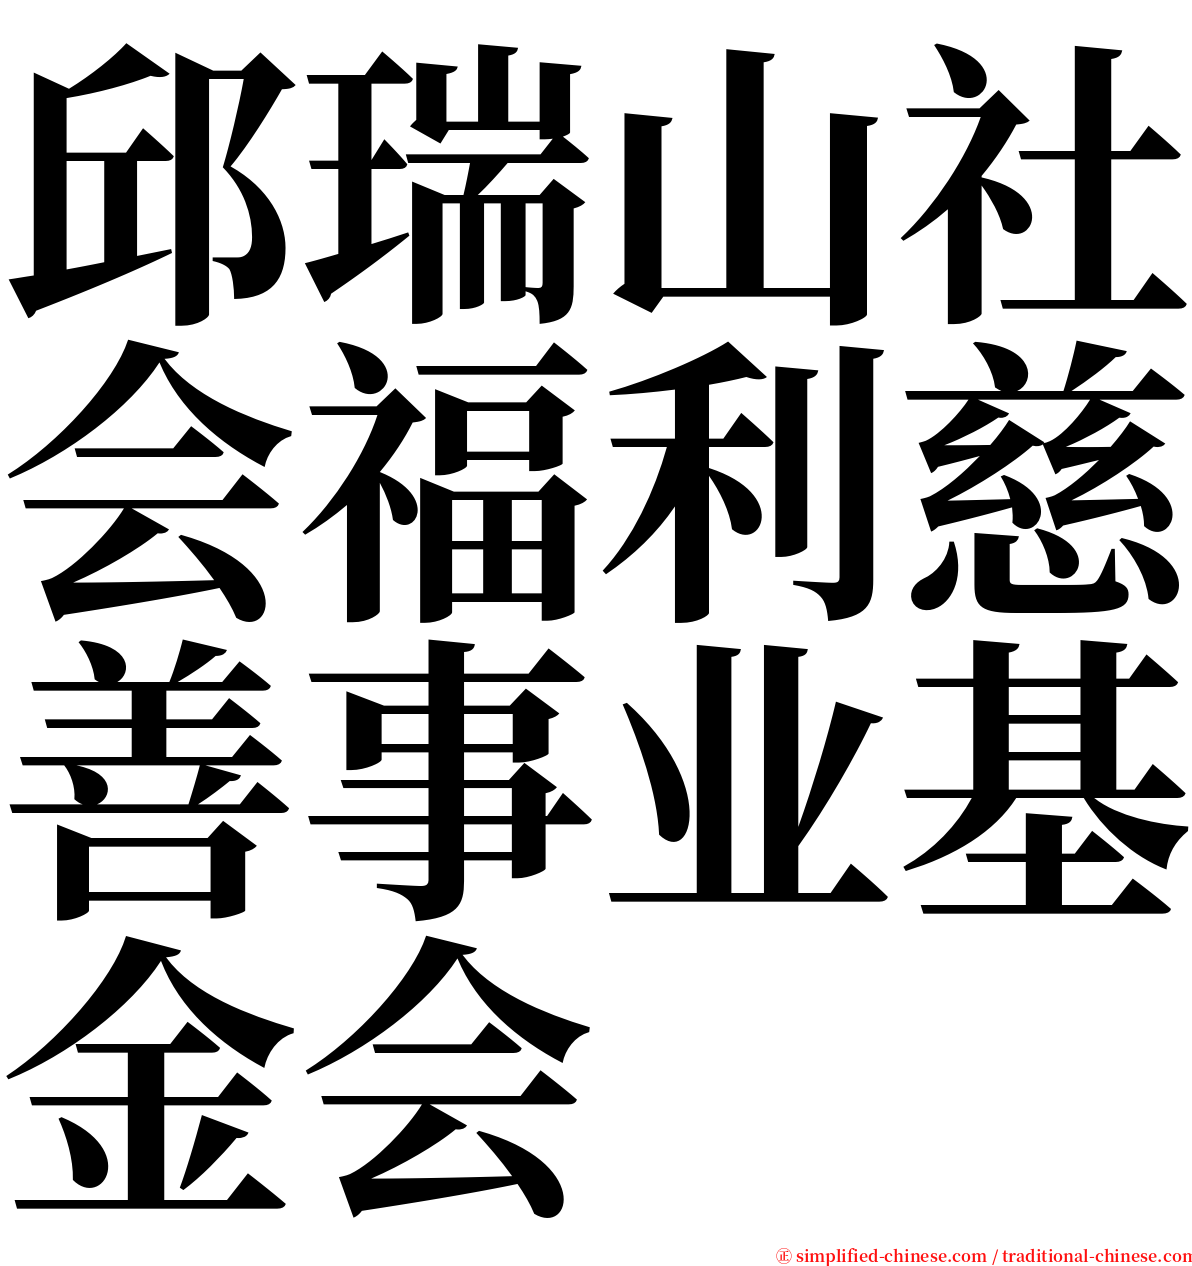 邱瑞山社会福利慈善事业基金会 serif font